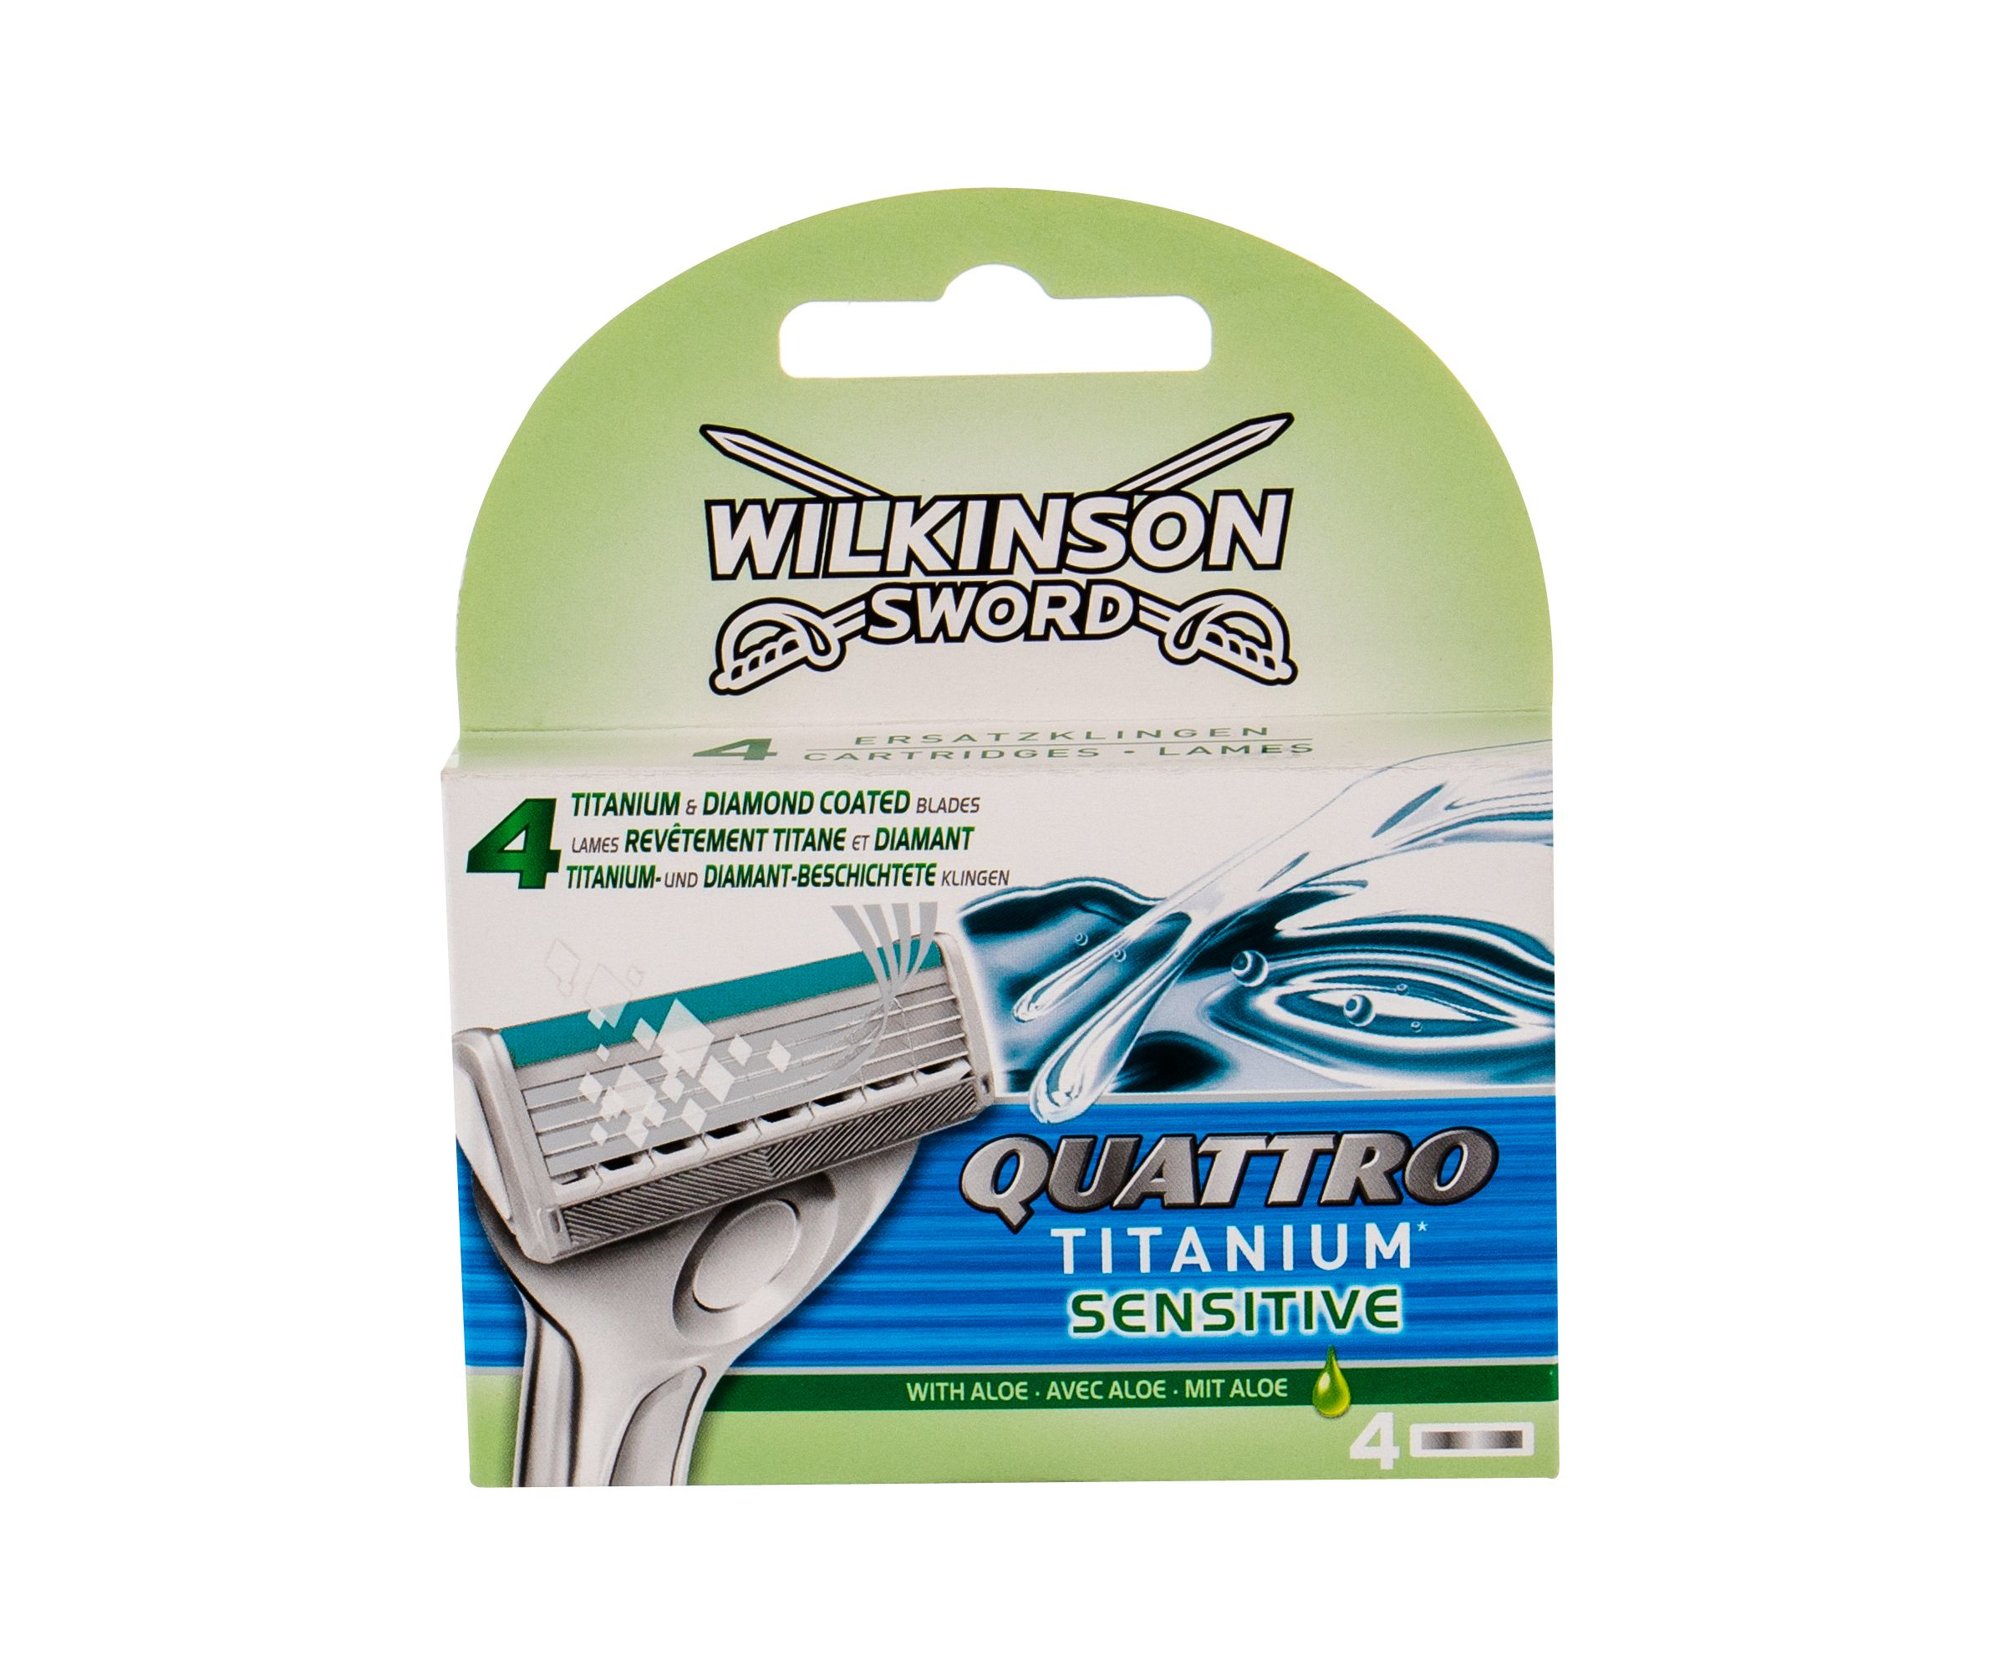 Wilkinson Sword Quattro Titanium Sensitive skustuvo galvutė